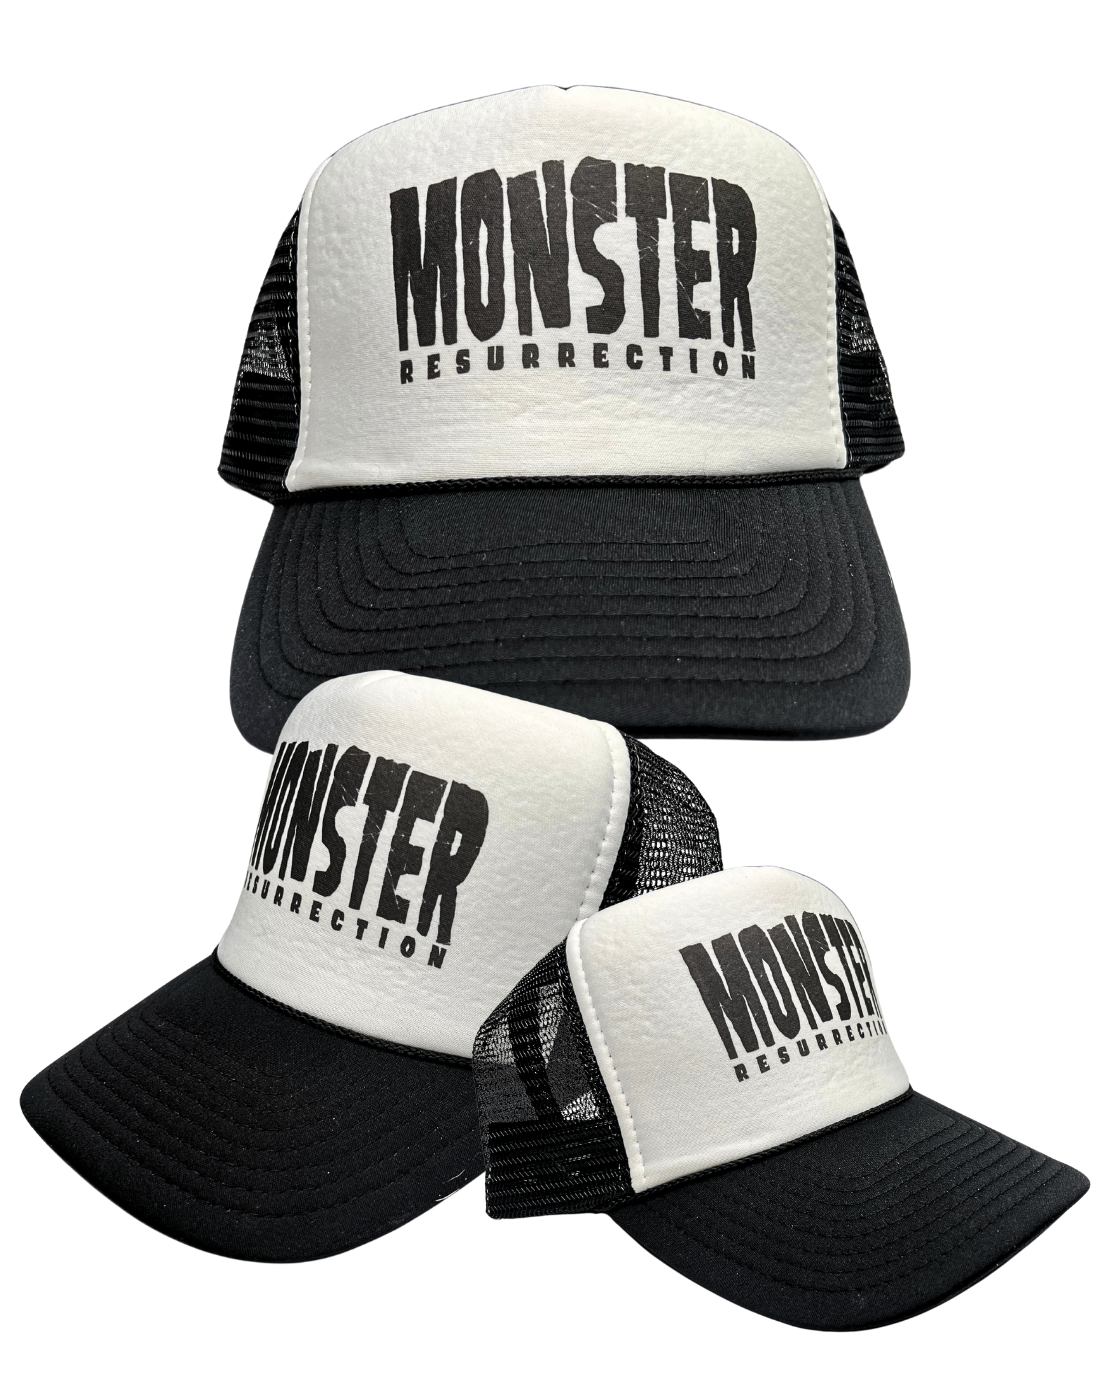 Monster Resurrection - Trucker Hats